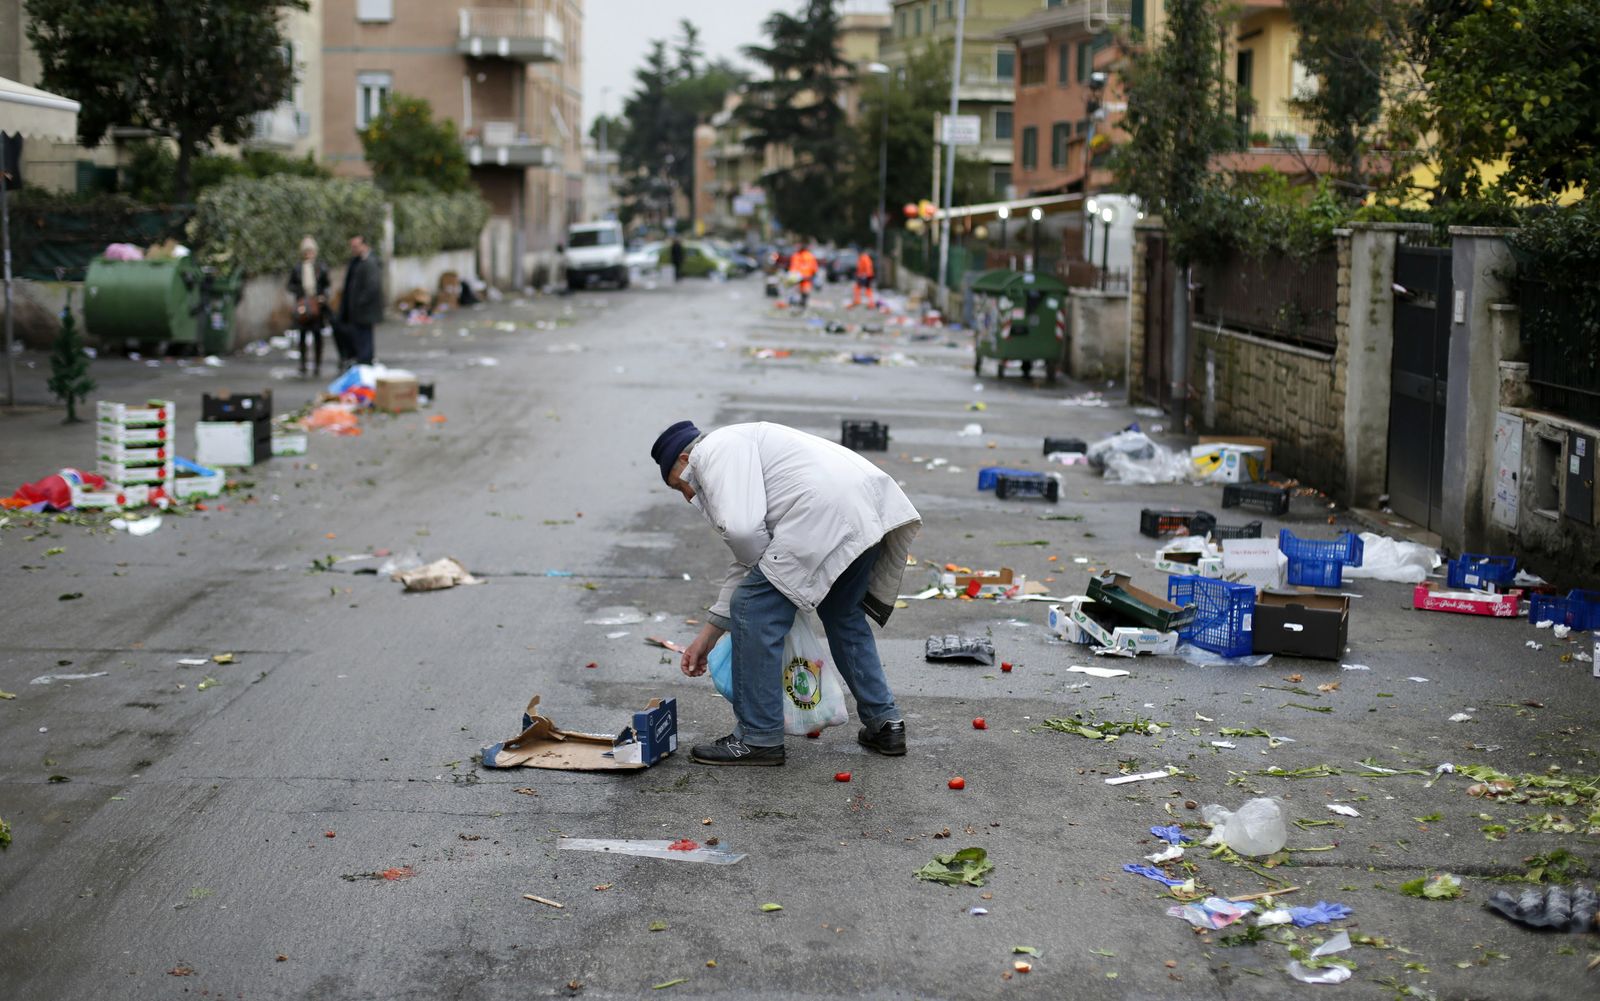 Foto: Un hombre recoge comida abandonada en el suelo tras celebrarse un mercado callejero en una calle de Roma. (Reuters)